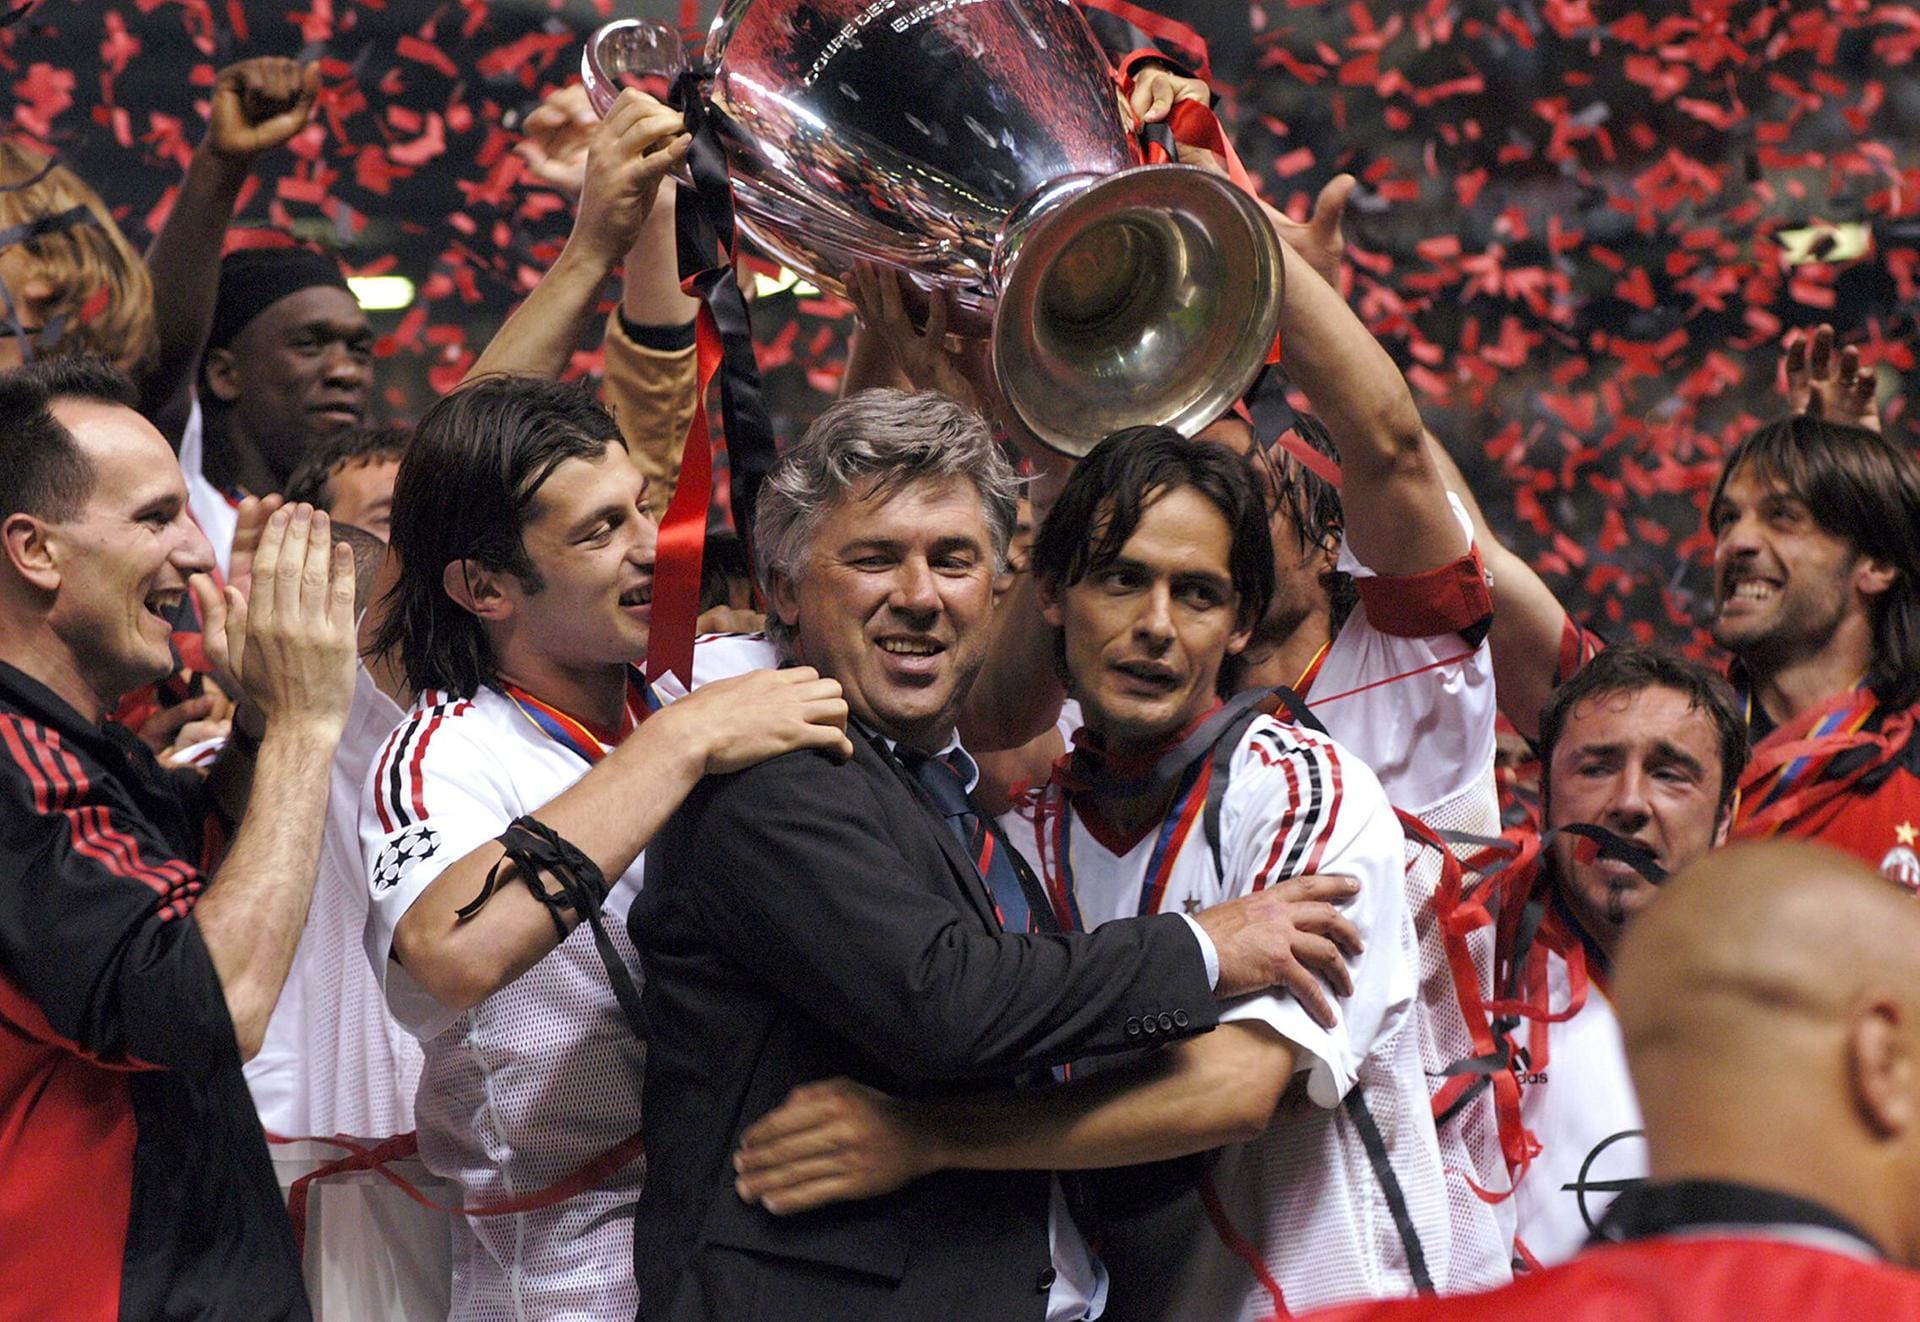 2001 beginnt seine siebeneinhalbjährige Trainerzeit bei Milan. Schon in der Saison 2002/2003 führt er sein Team ins Endspiel der Champions League und bezwingt dort seinen Ex-Klub Juve mit 3:2 im Elfmeterschießen. Damit setzt sich Ancelotti (Mitte, mit Filippo Inzaghi) zum dritten Mal Europas Krone auf, zum ersten Mal als Trainer.